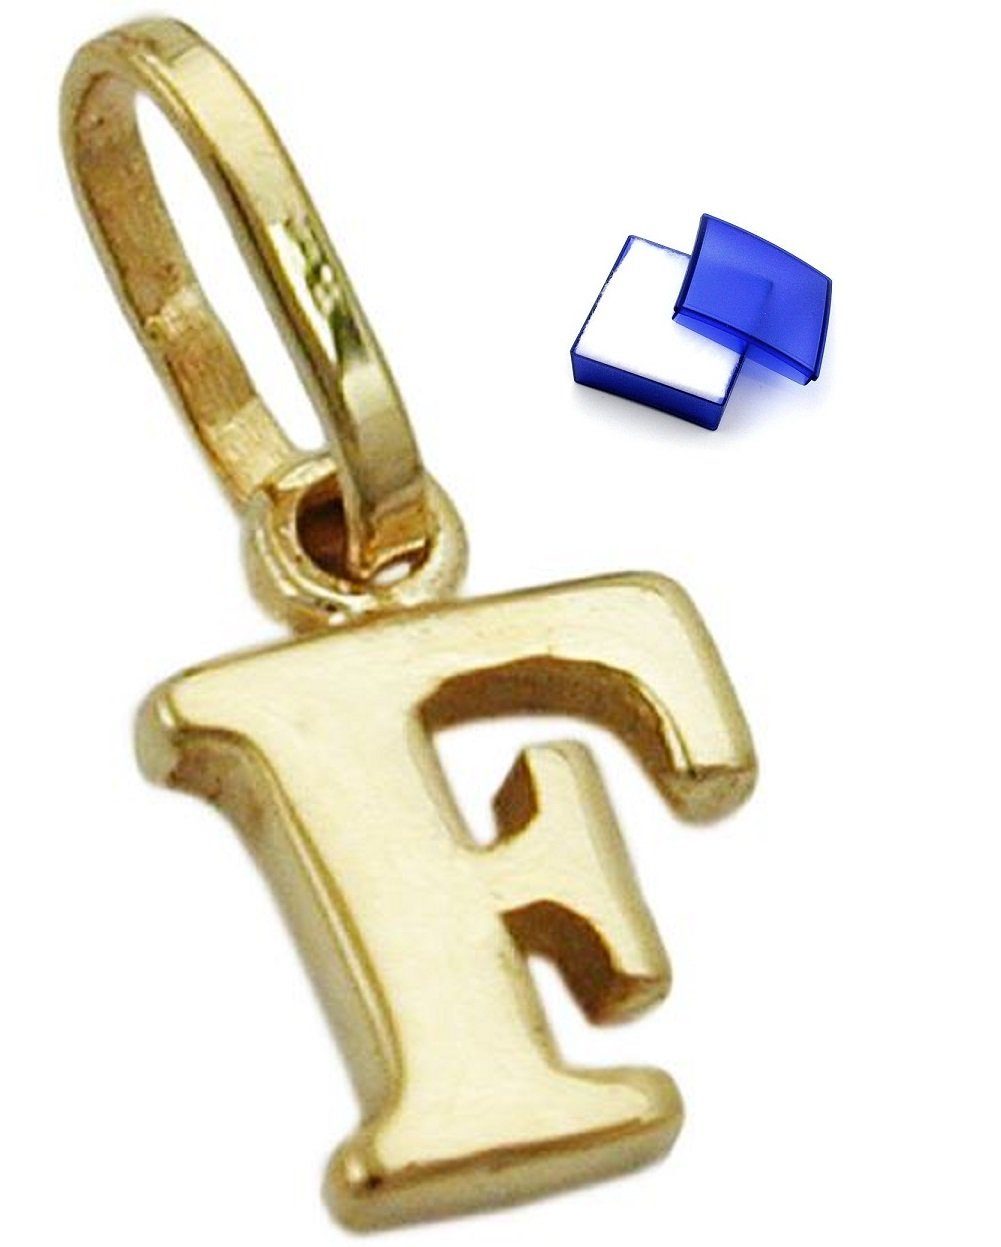 unbespielt Buchstabenanhänger Kettenanhänger Anhänger Buchstabe F aus 375 Gold 9 Karat 8 x 5,5 mm inklusive Schmuckbox, Goldschmuck für Damen und Herren